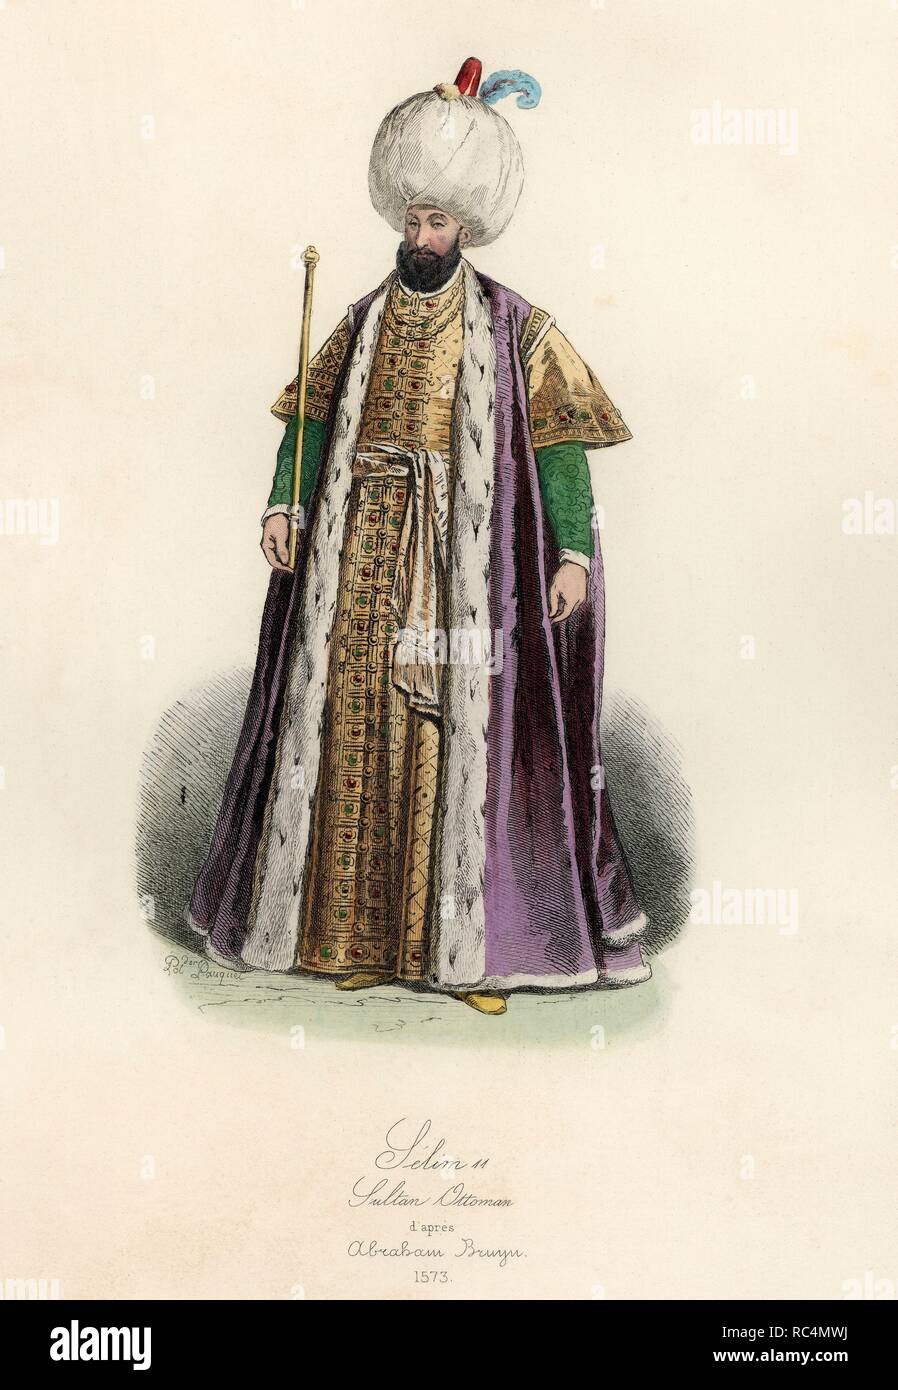 Selim II o Salim II (1524-1574). Sultán otomano. Grabado de 1870. Stockfoto